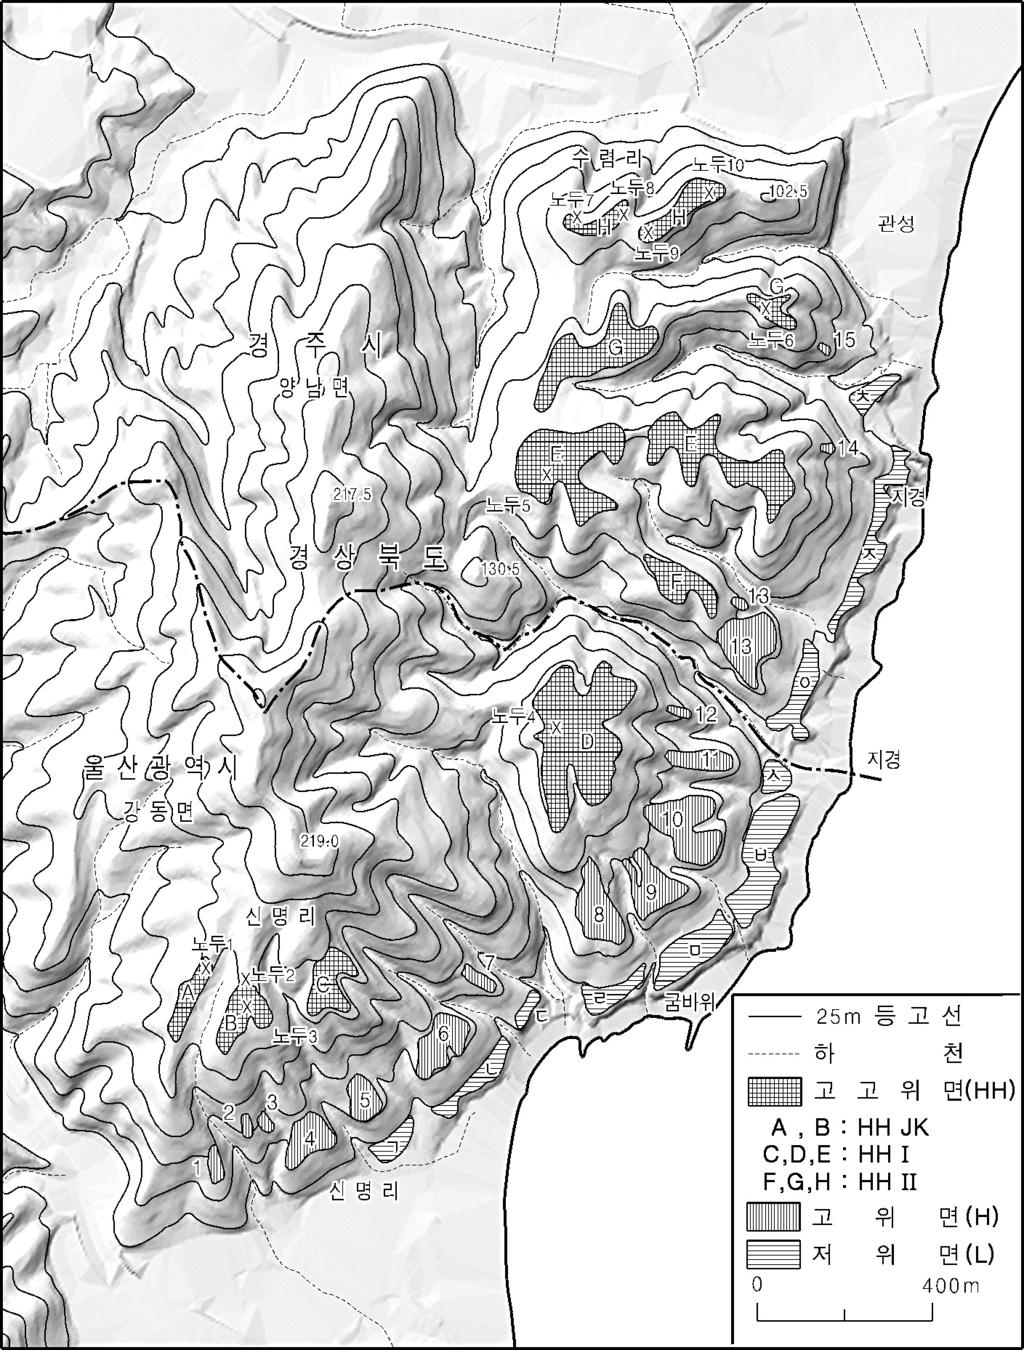 한국 남동해안 경주-울산 경계지역 지경리 일대 해안단구 지형발달 그림 2. 연구지역의 해안단구 분포 고고위면에 비해 훨씬 좁을 뿐 아니라, 한국 남동 해안에서 고위면 규모로는 크지 않은 편이다.